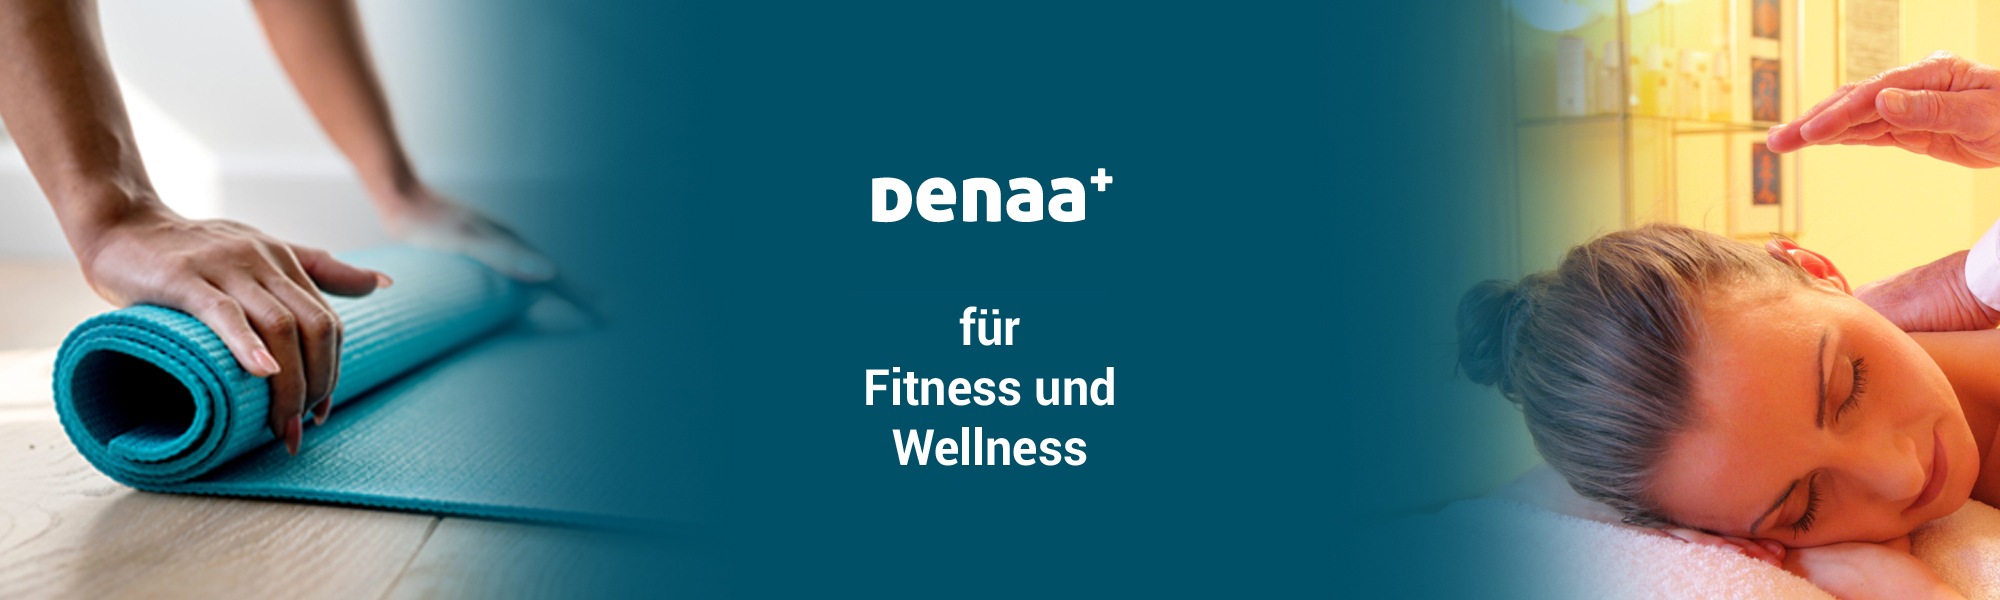 DENAA+ für Fitness und Wellness